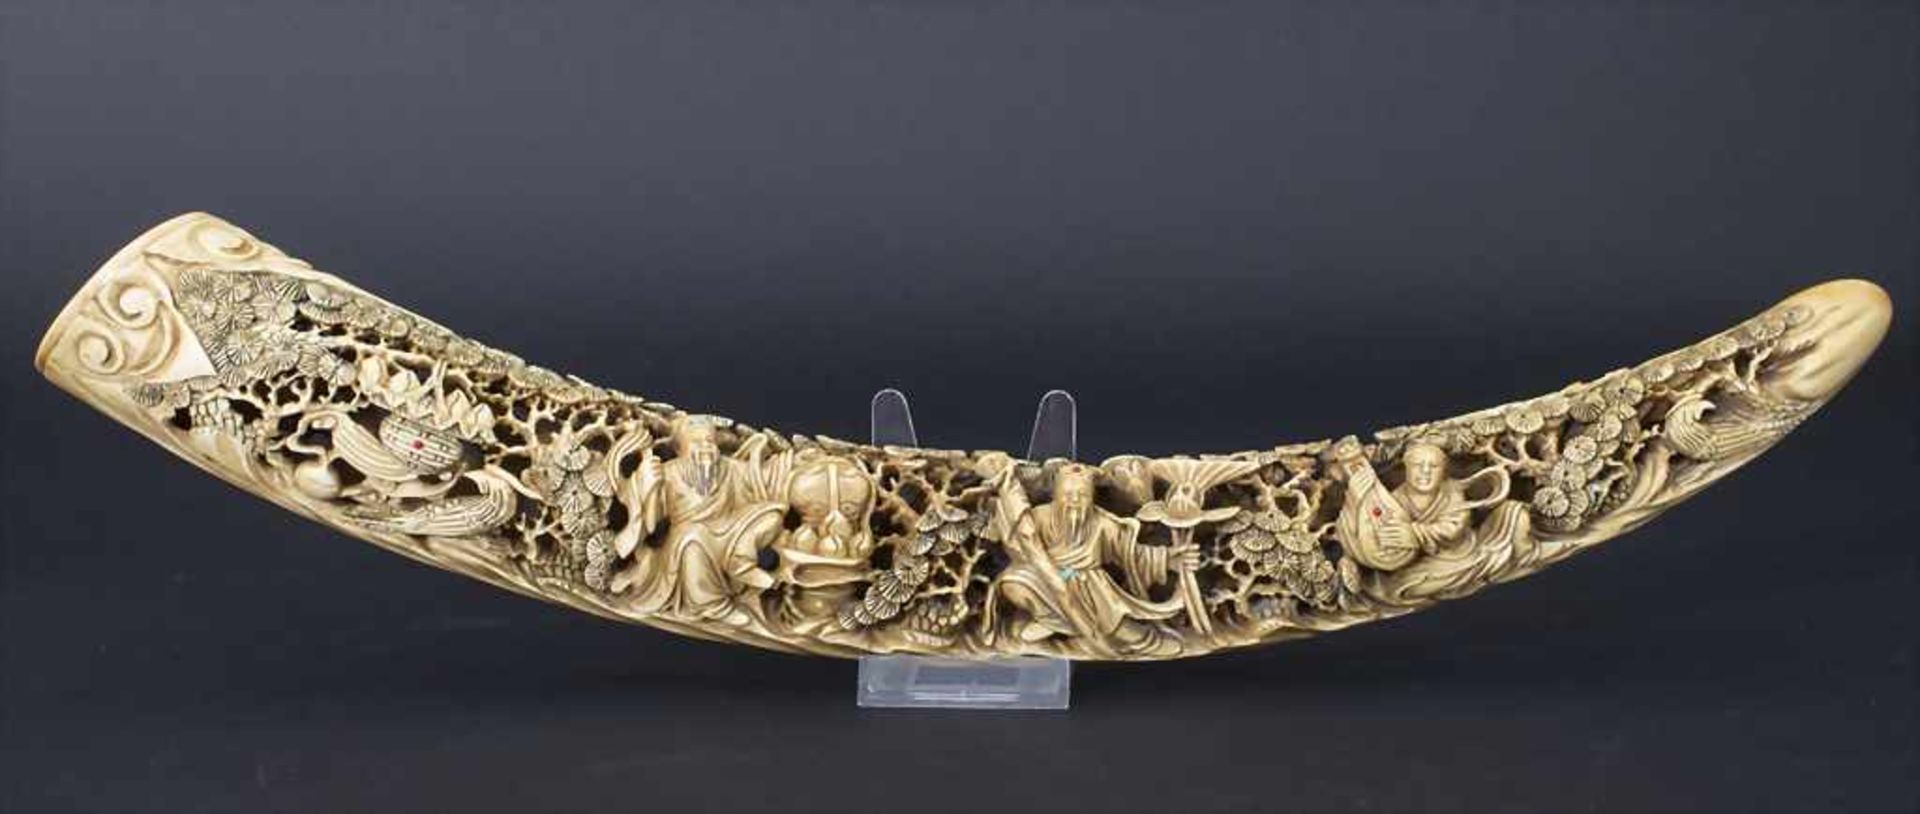 Stoßzahn, China, 18. / 19. Jh.Material: Elfenbein fein geschnitzt mitTürkis, Rubin, Lapilazuli,